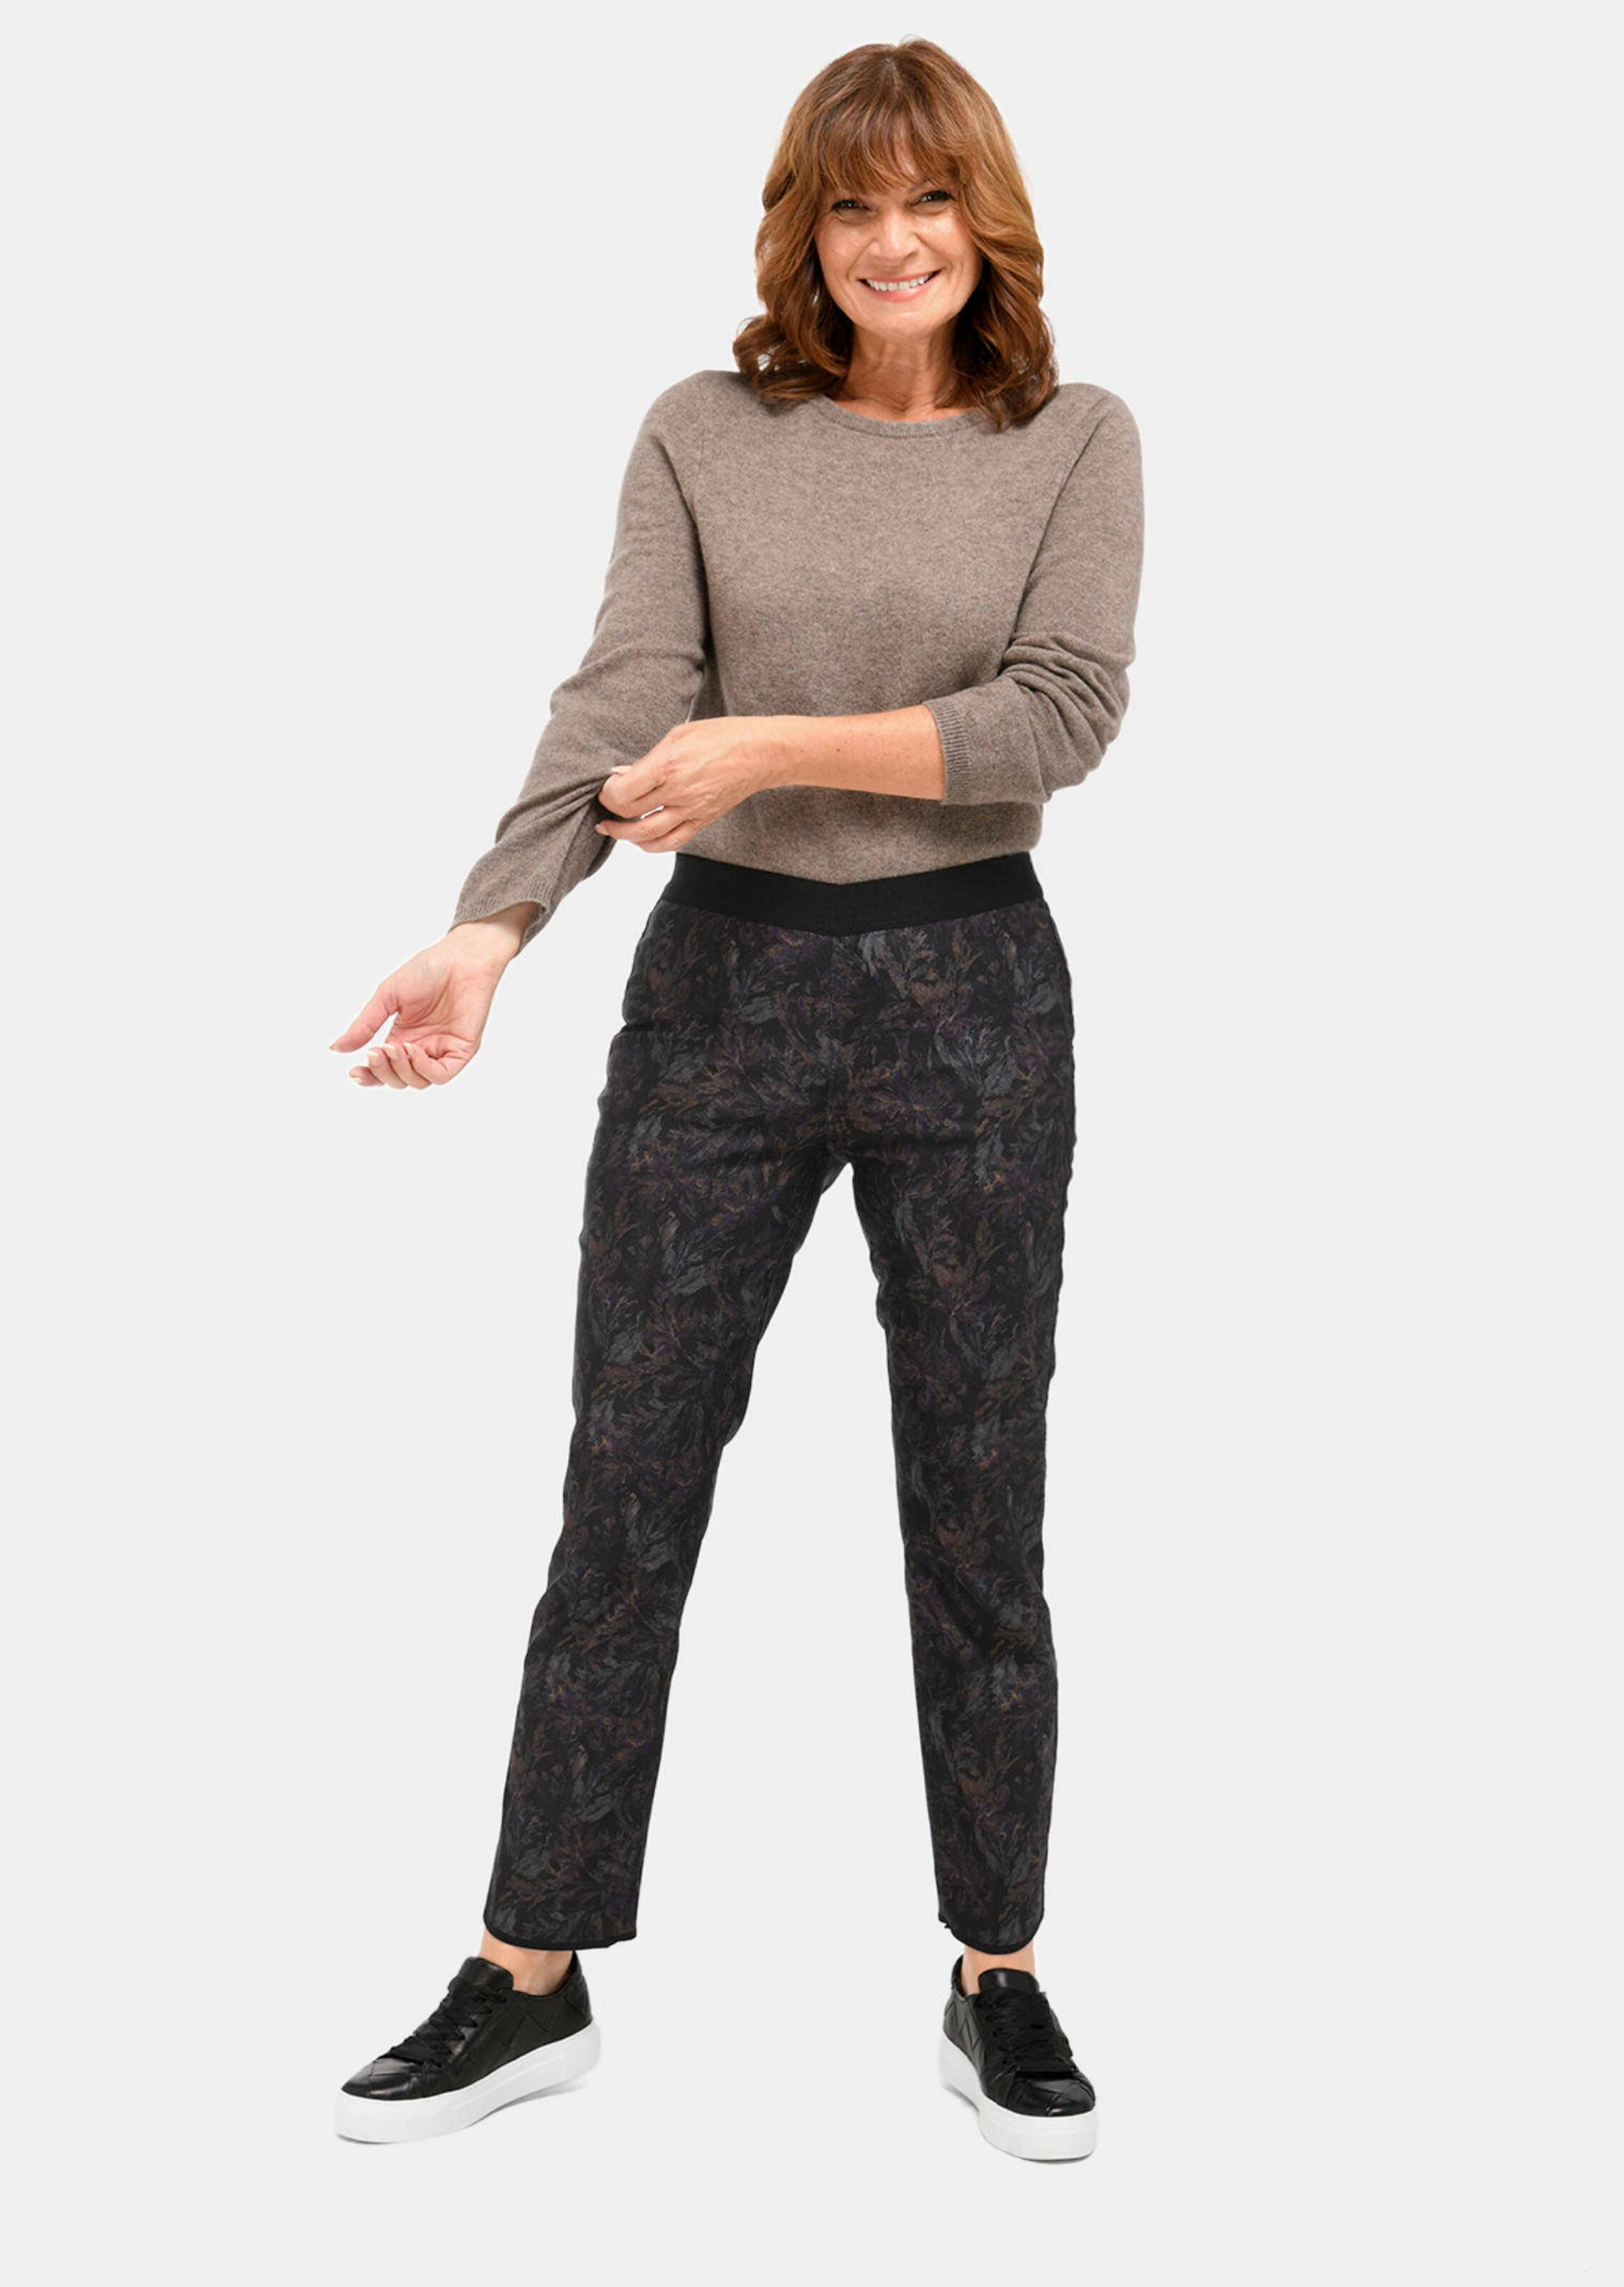 Pantalon enduit réversible couleur bronze femme